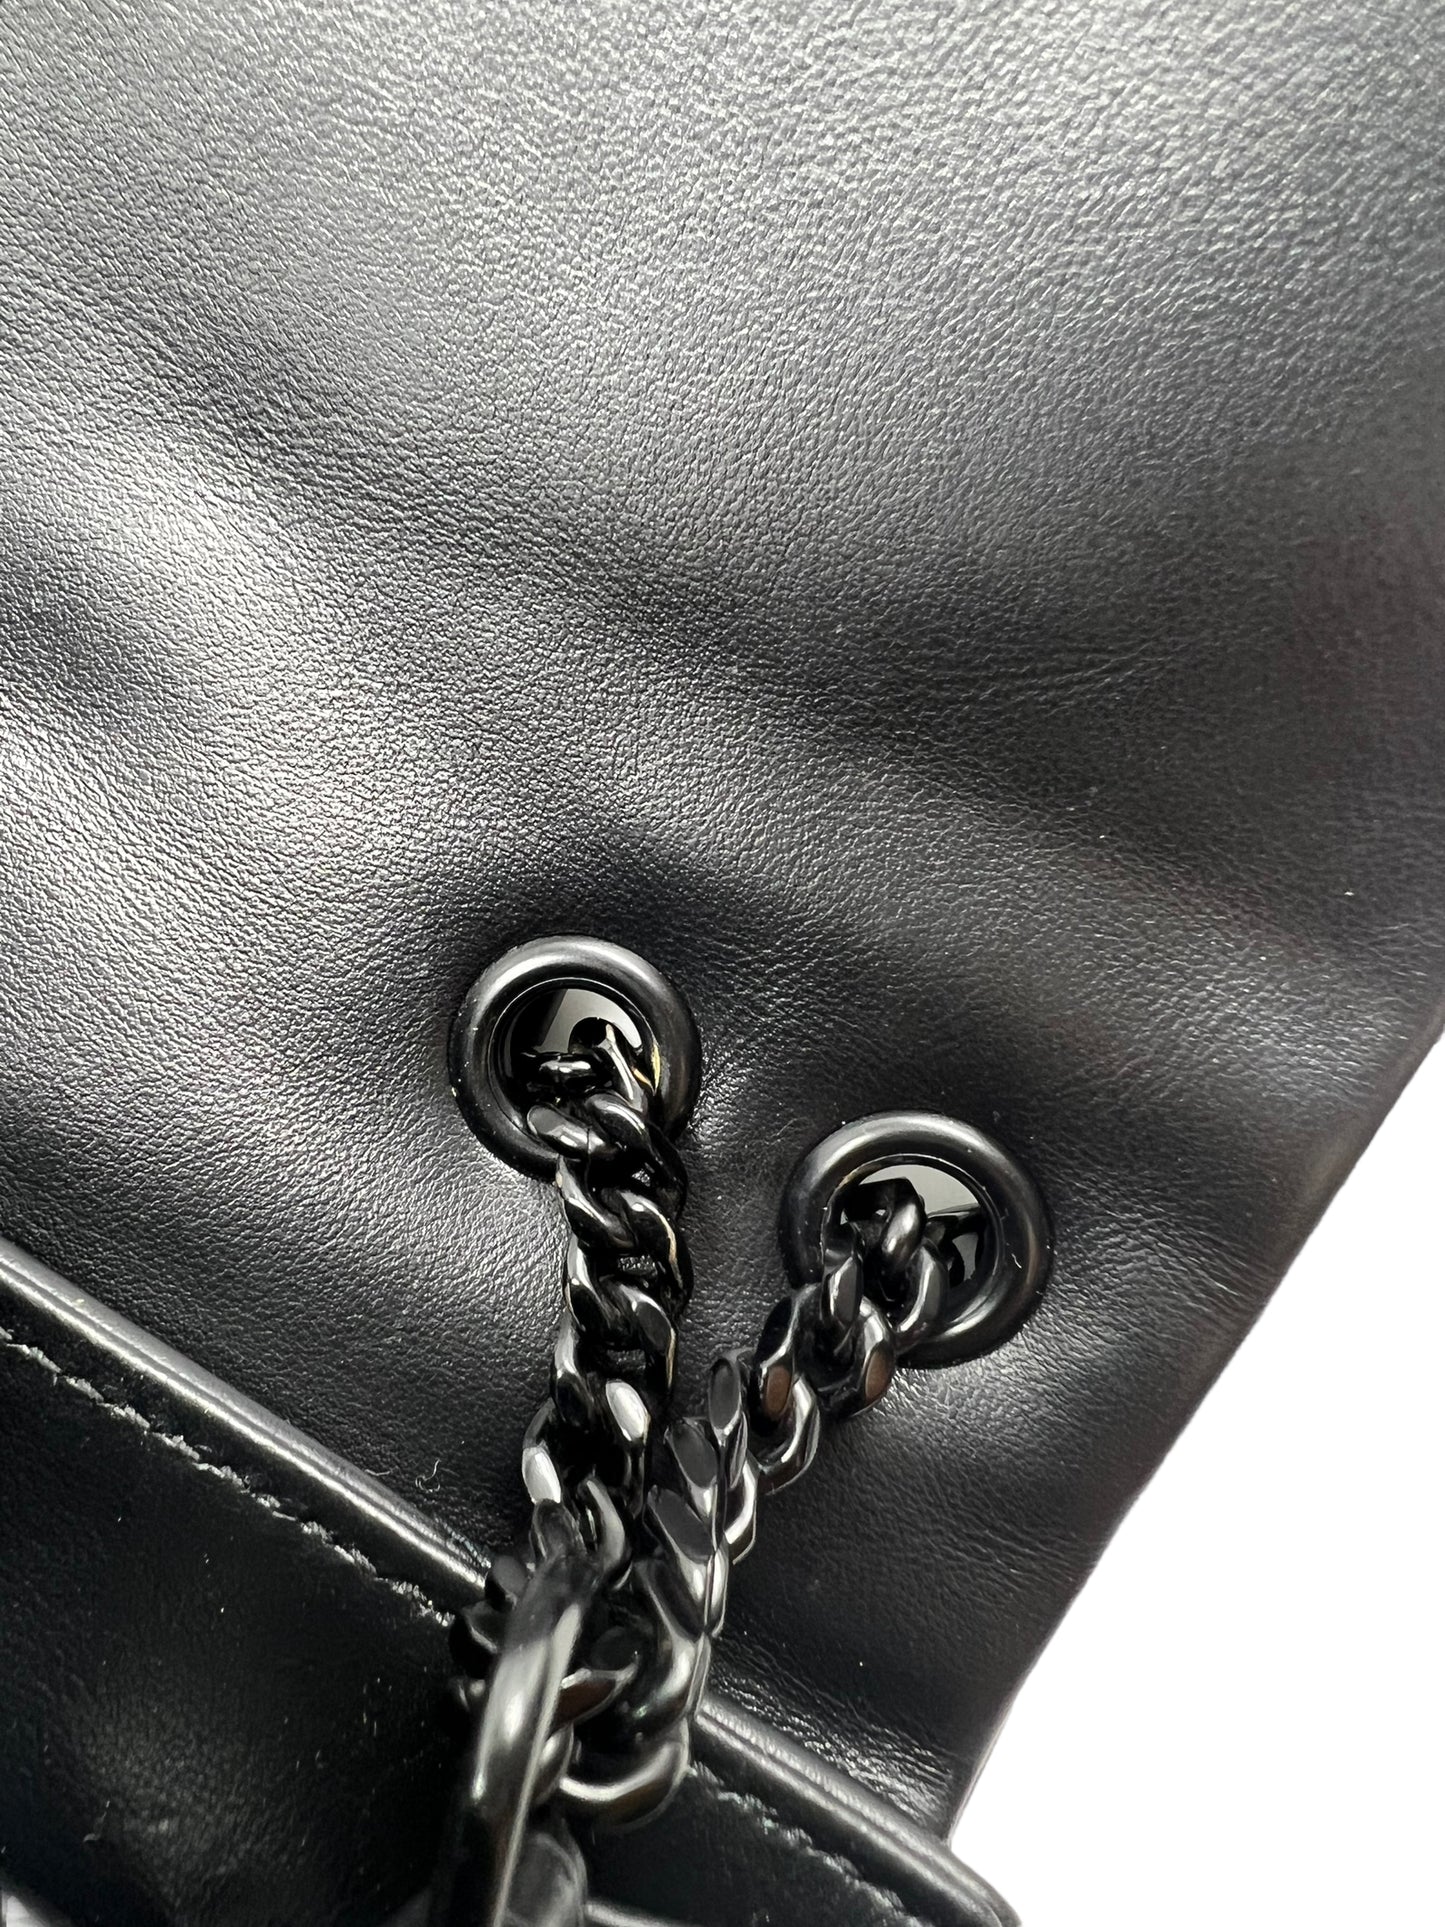 Saint Laurent YSL Black Small Loulou Chain Shoulder Bag